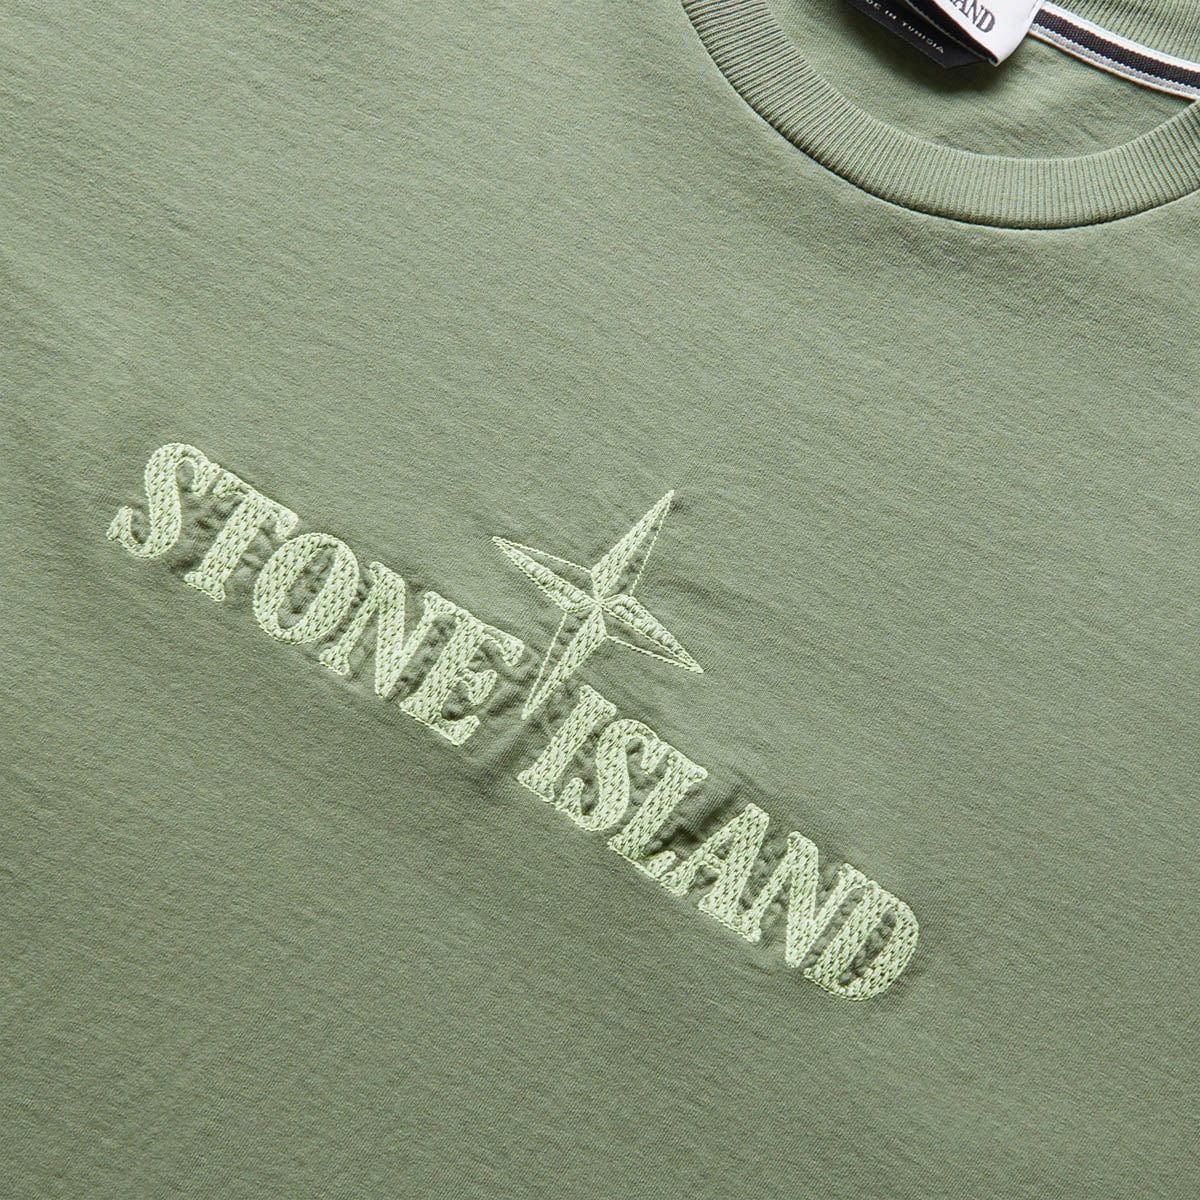 Stone Island T-Shirts 'STITCHES TWO' T-SHIRT 781521579